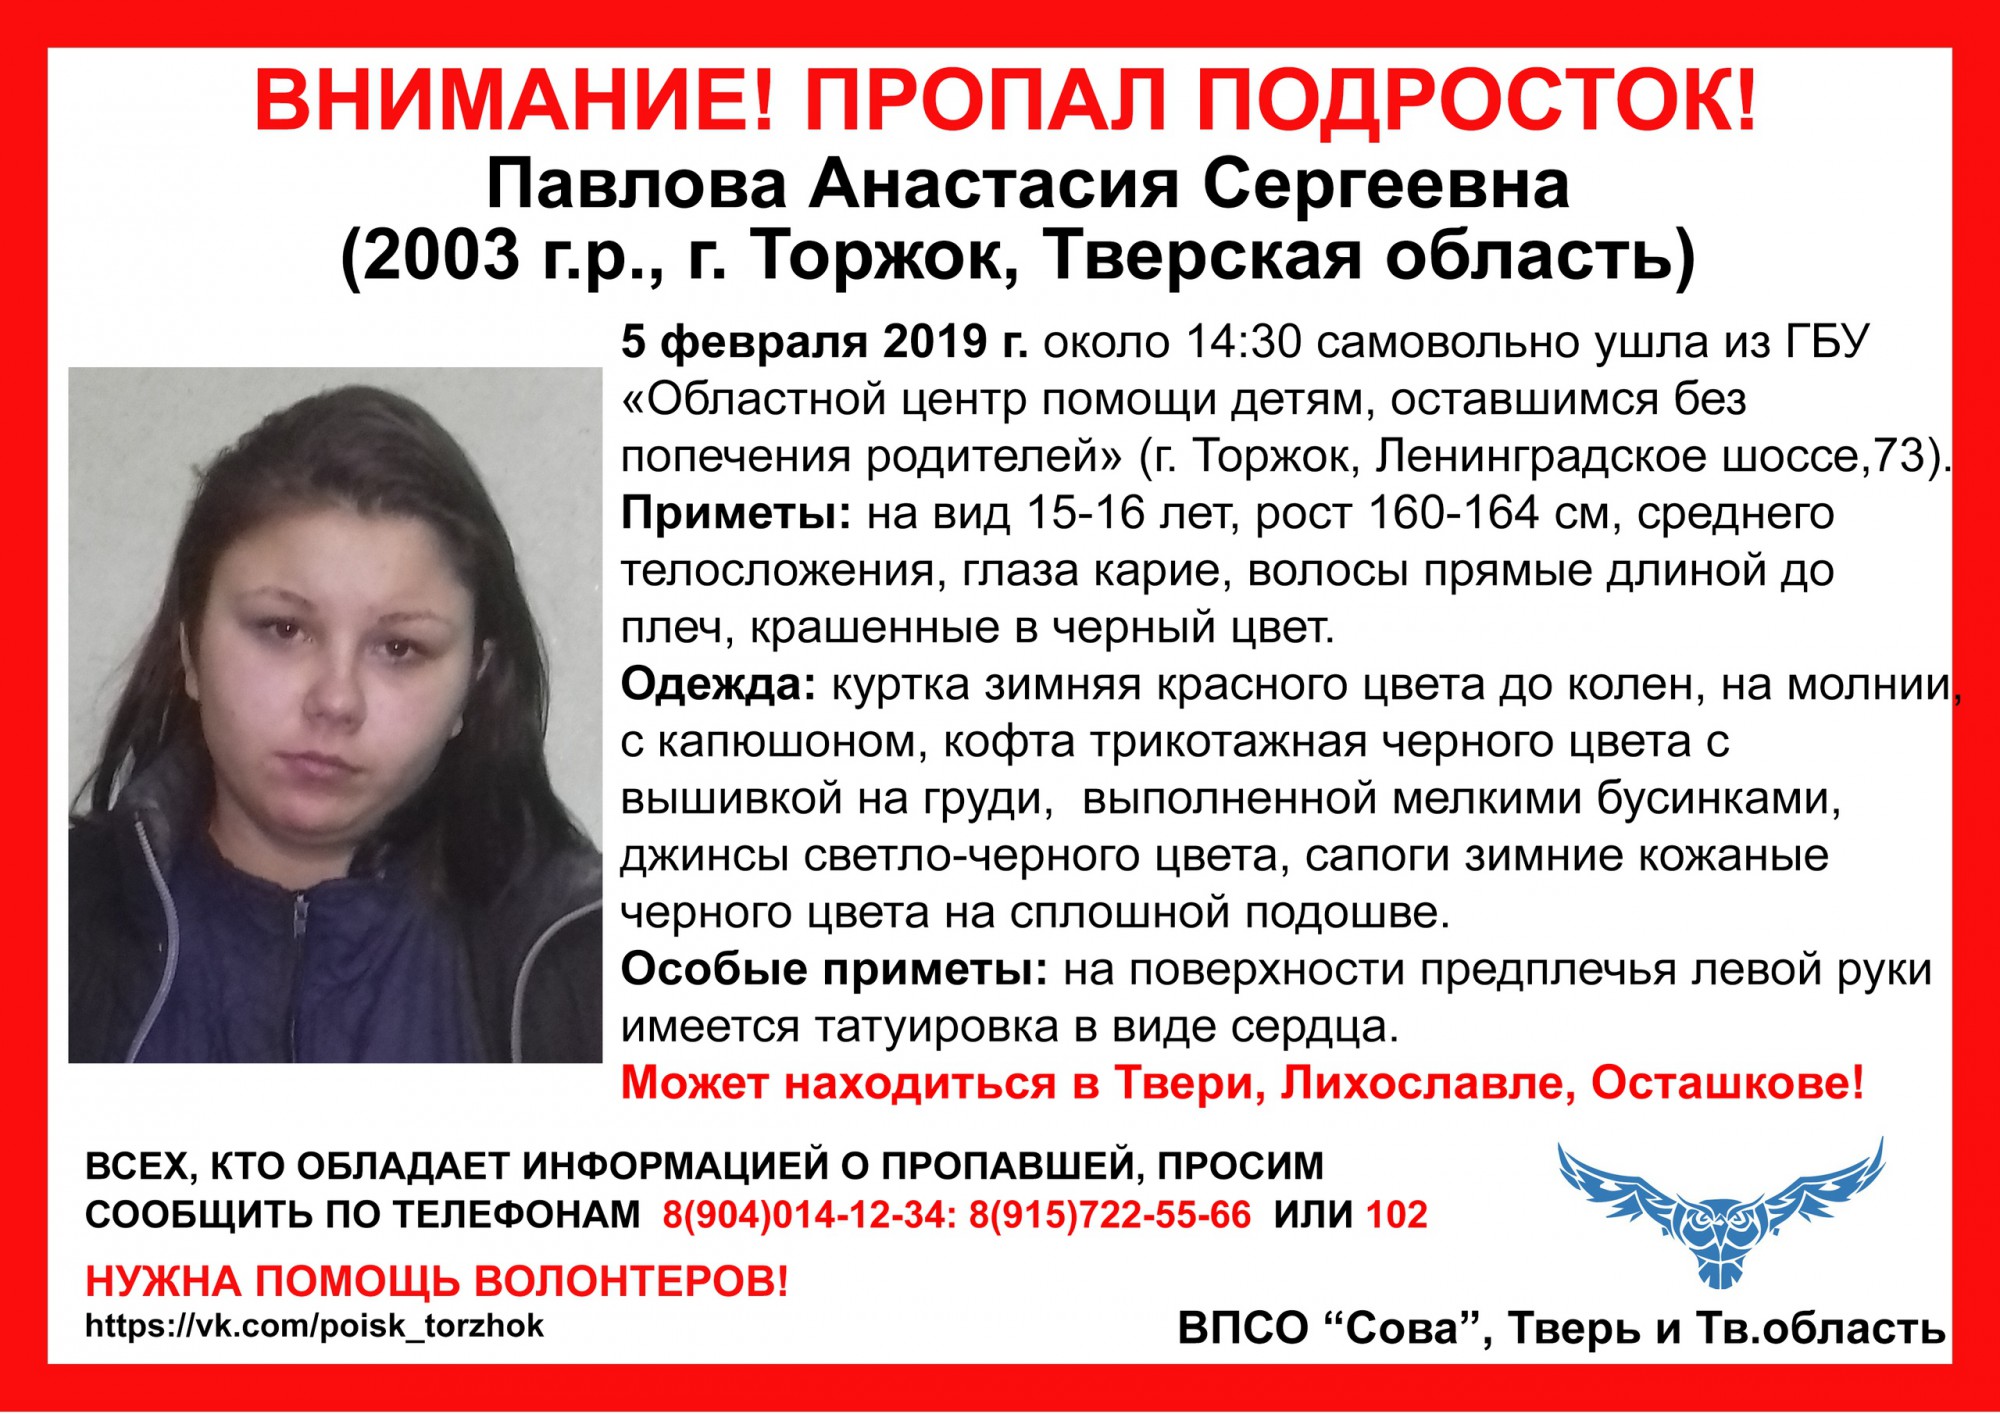 Пропавшие люди в Тверской области